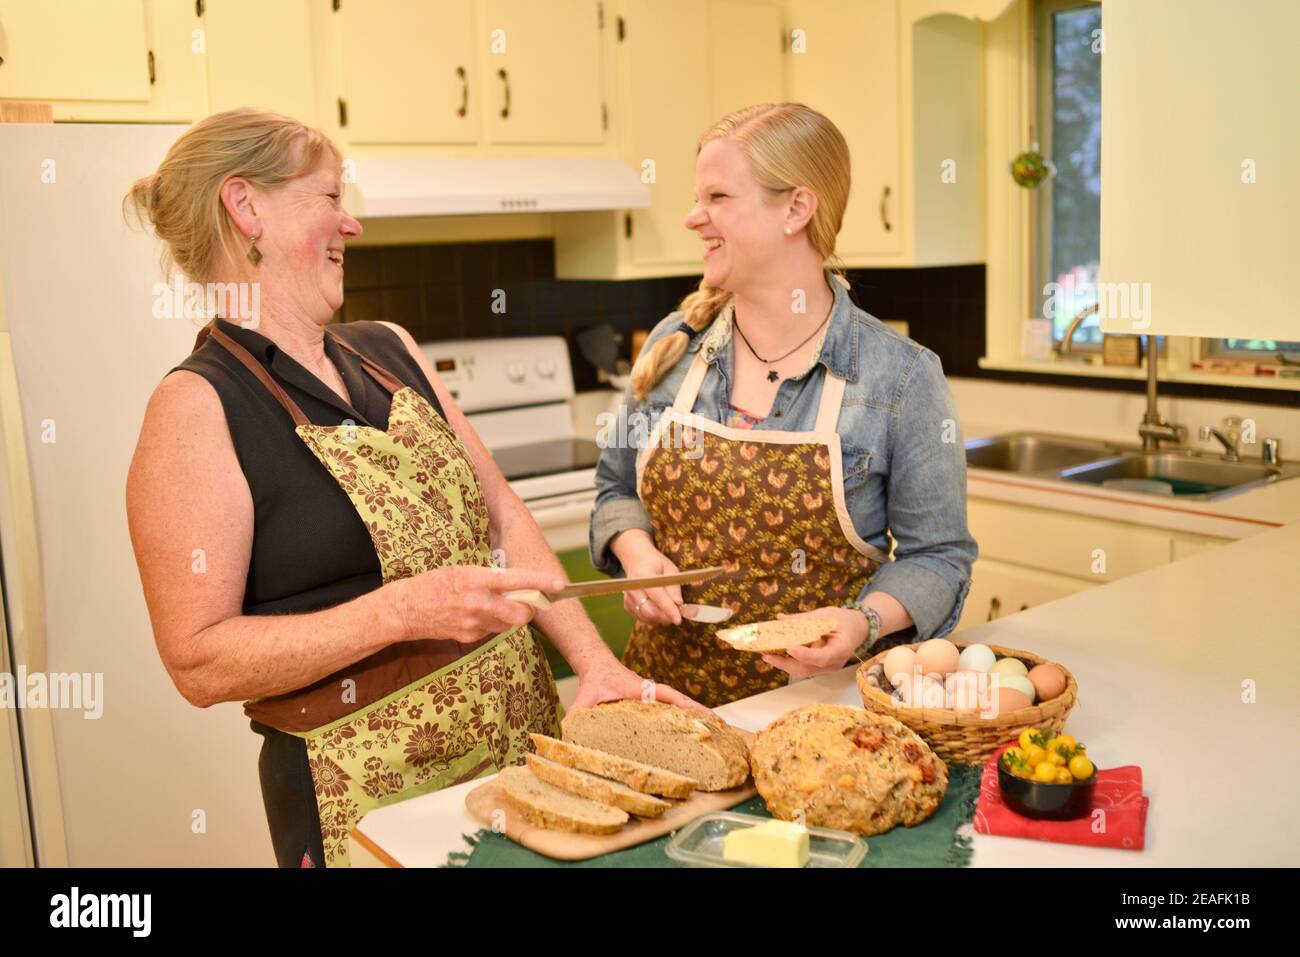 Zwei attraktive kaukasische Frauen Hausbäcker in Schürzen, schneiden frisch gebackenes Brot auf der Küchentheke, Butter Brot, Wisconsin, USA Stockfoto